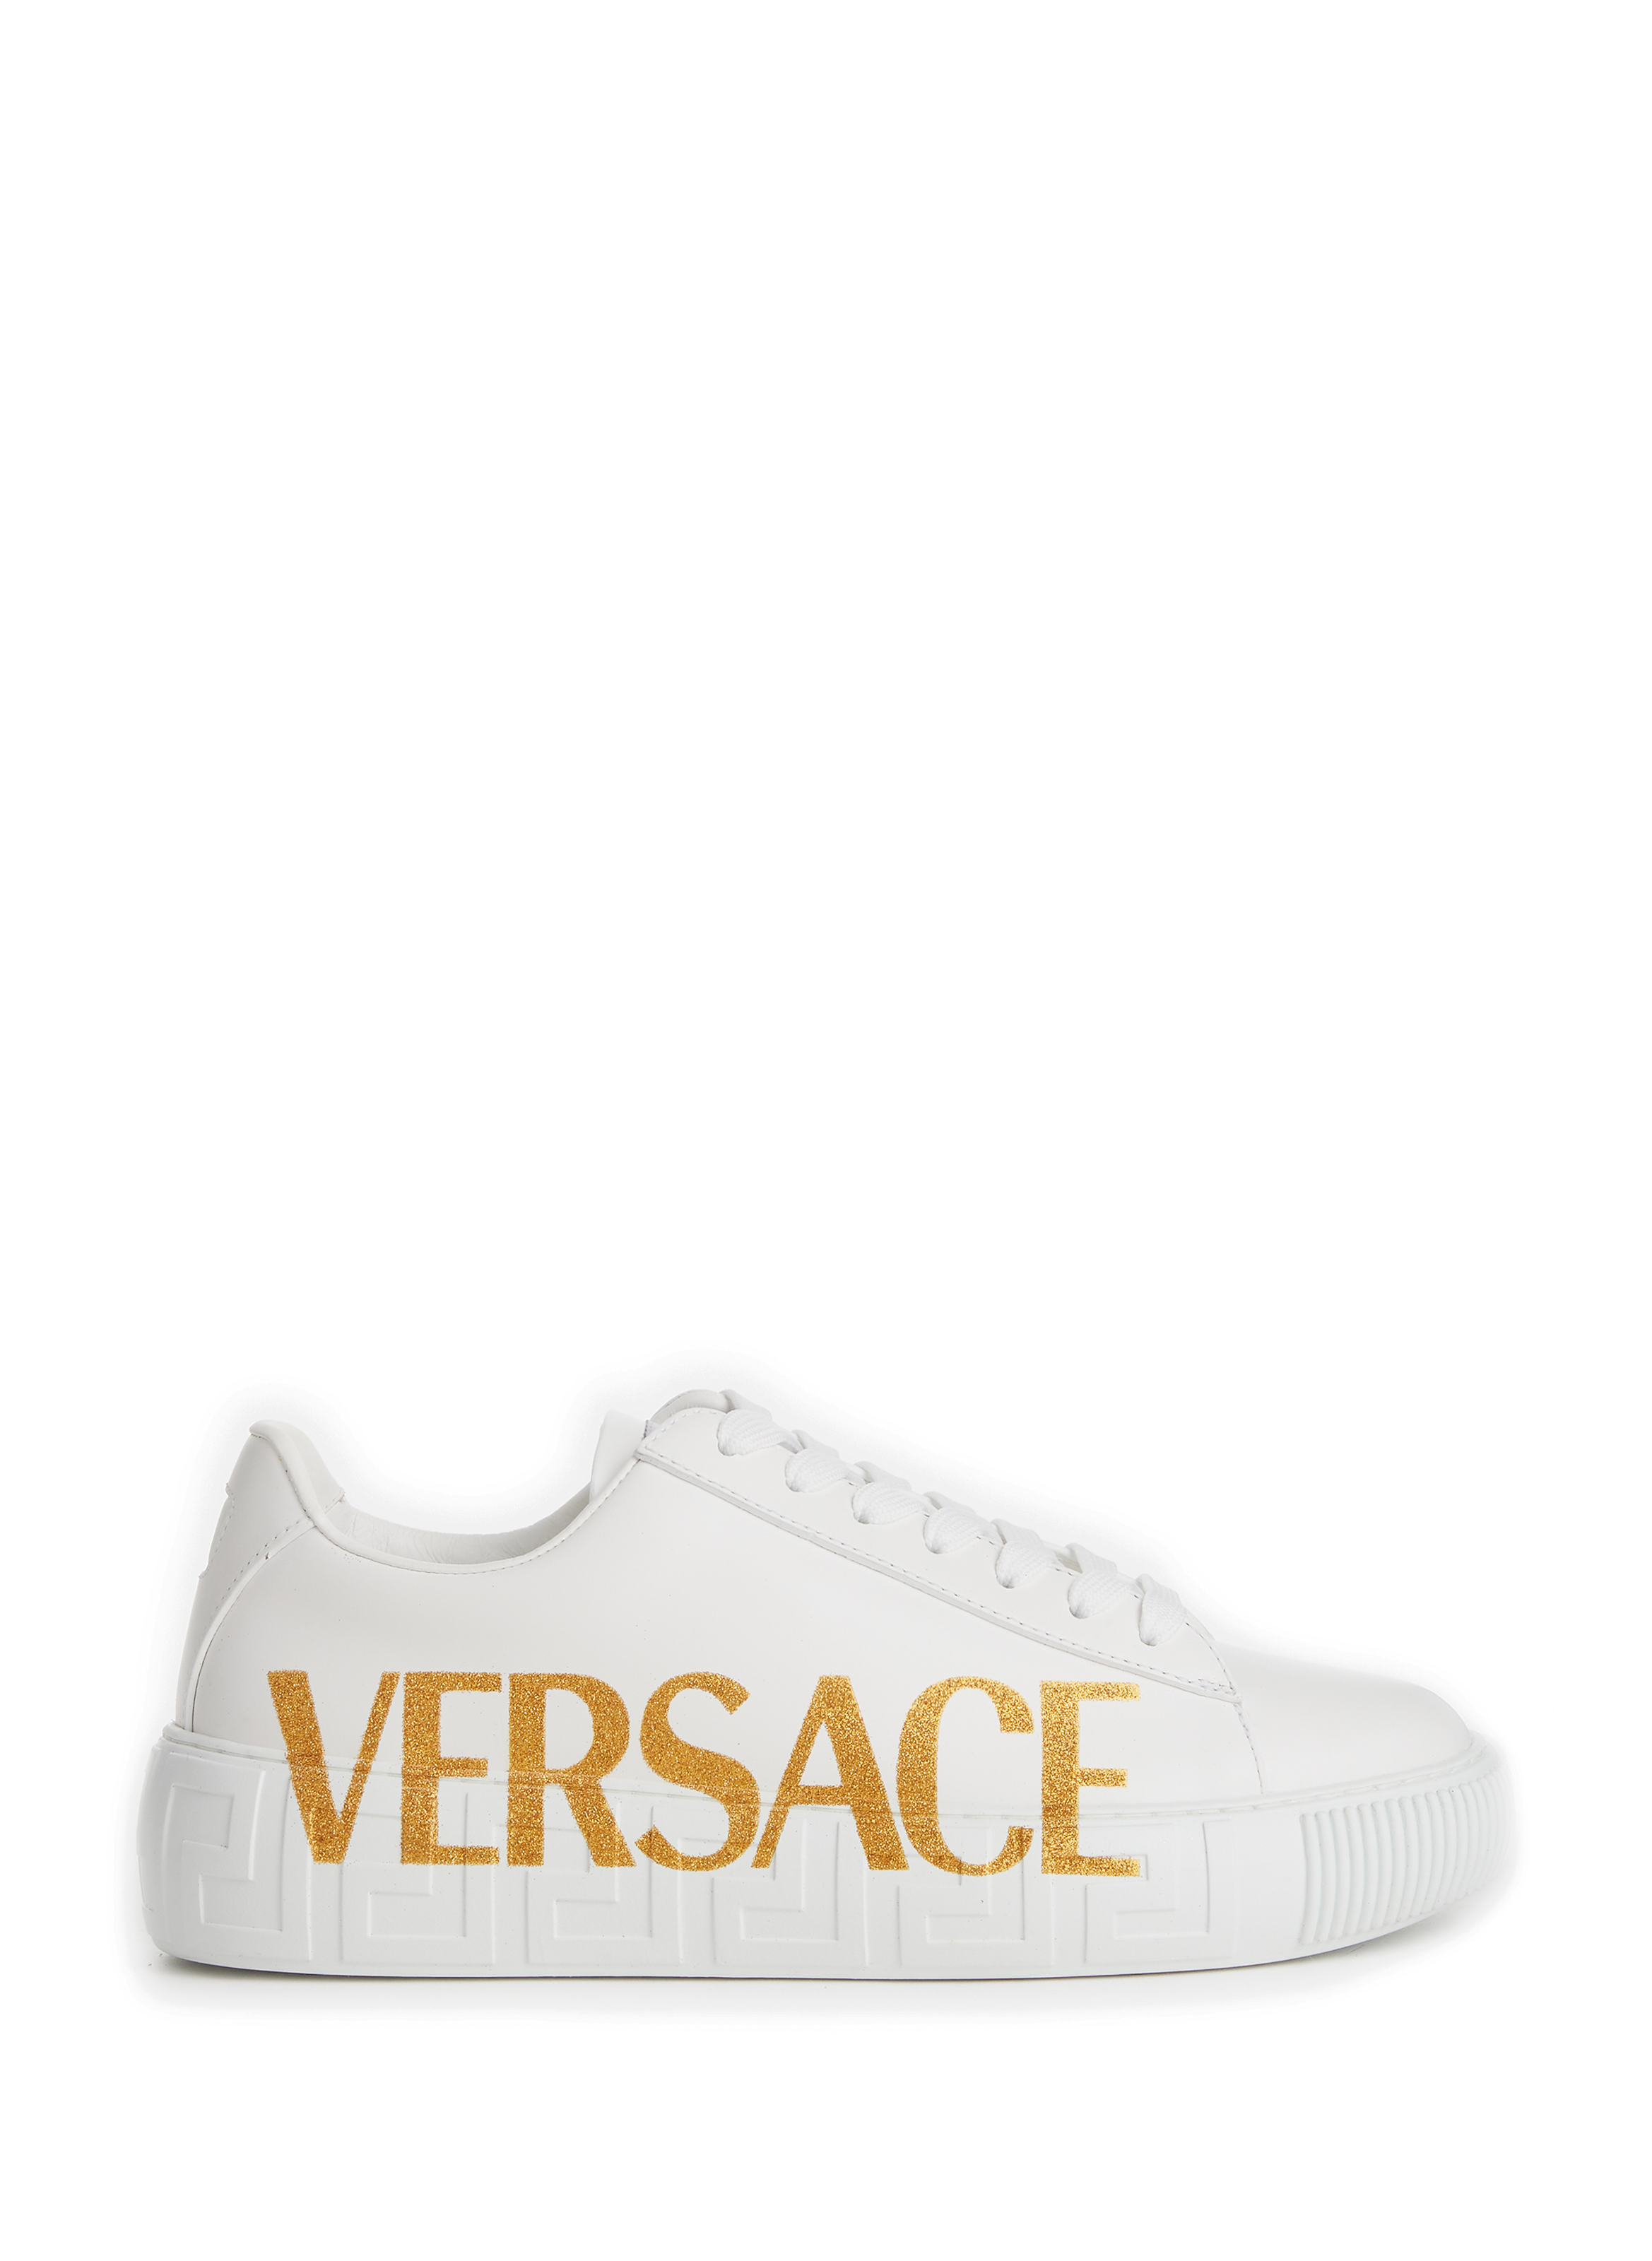 Femme Chaussures Versace Femme Baskets Versace Femme Baskets VERSACE 37 blanc Baskets Versace Femme 